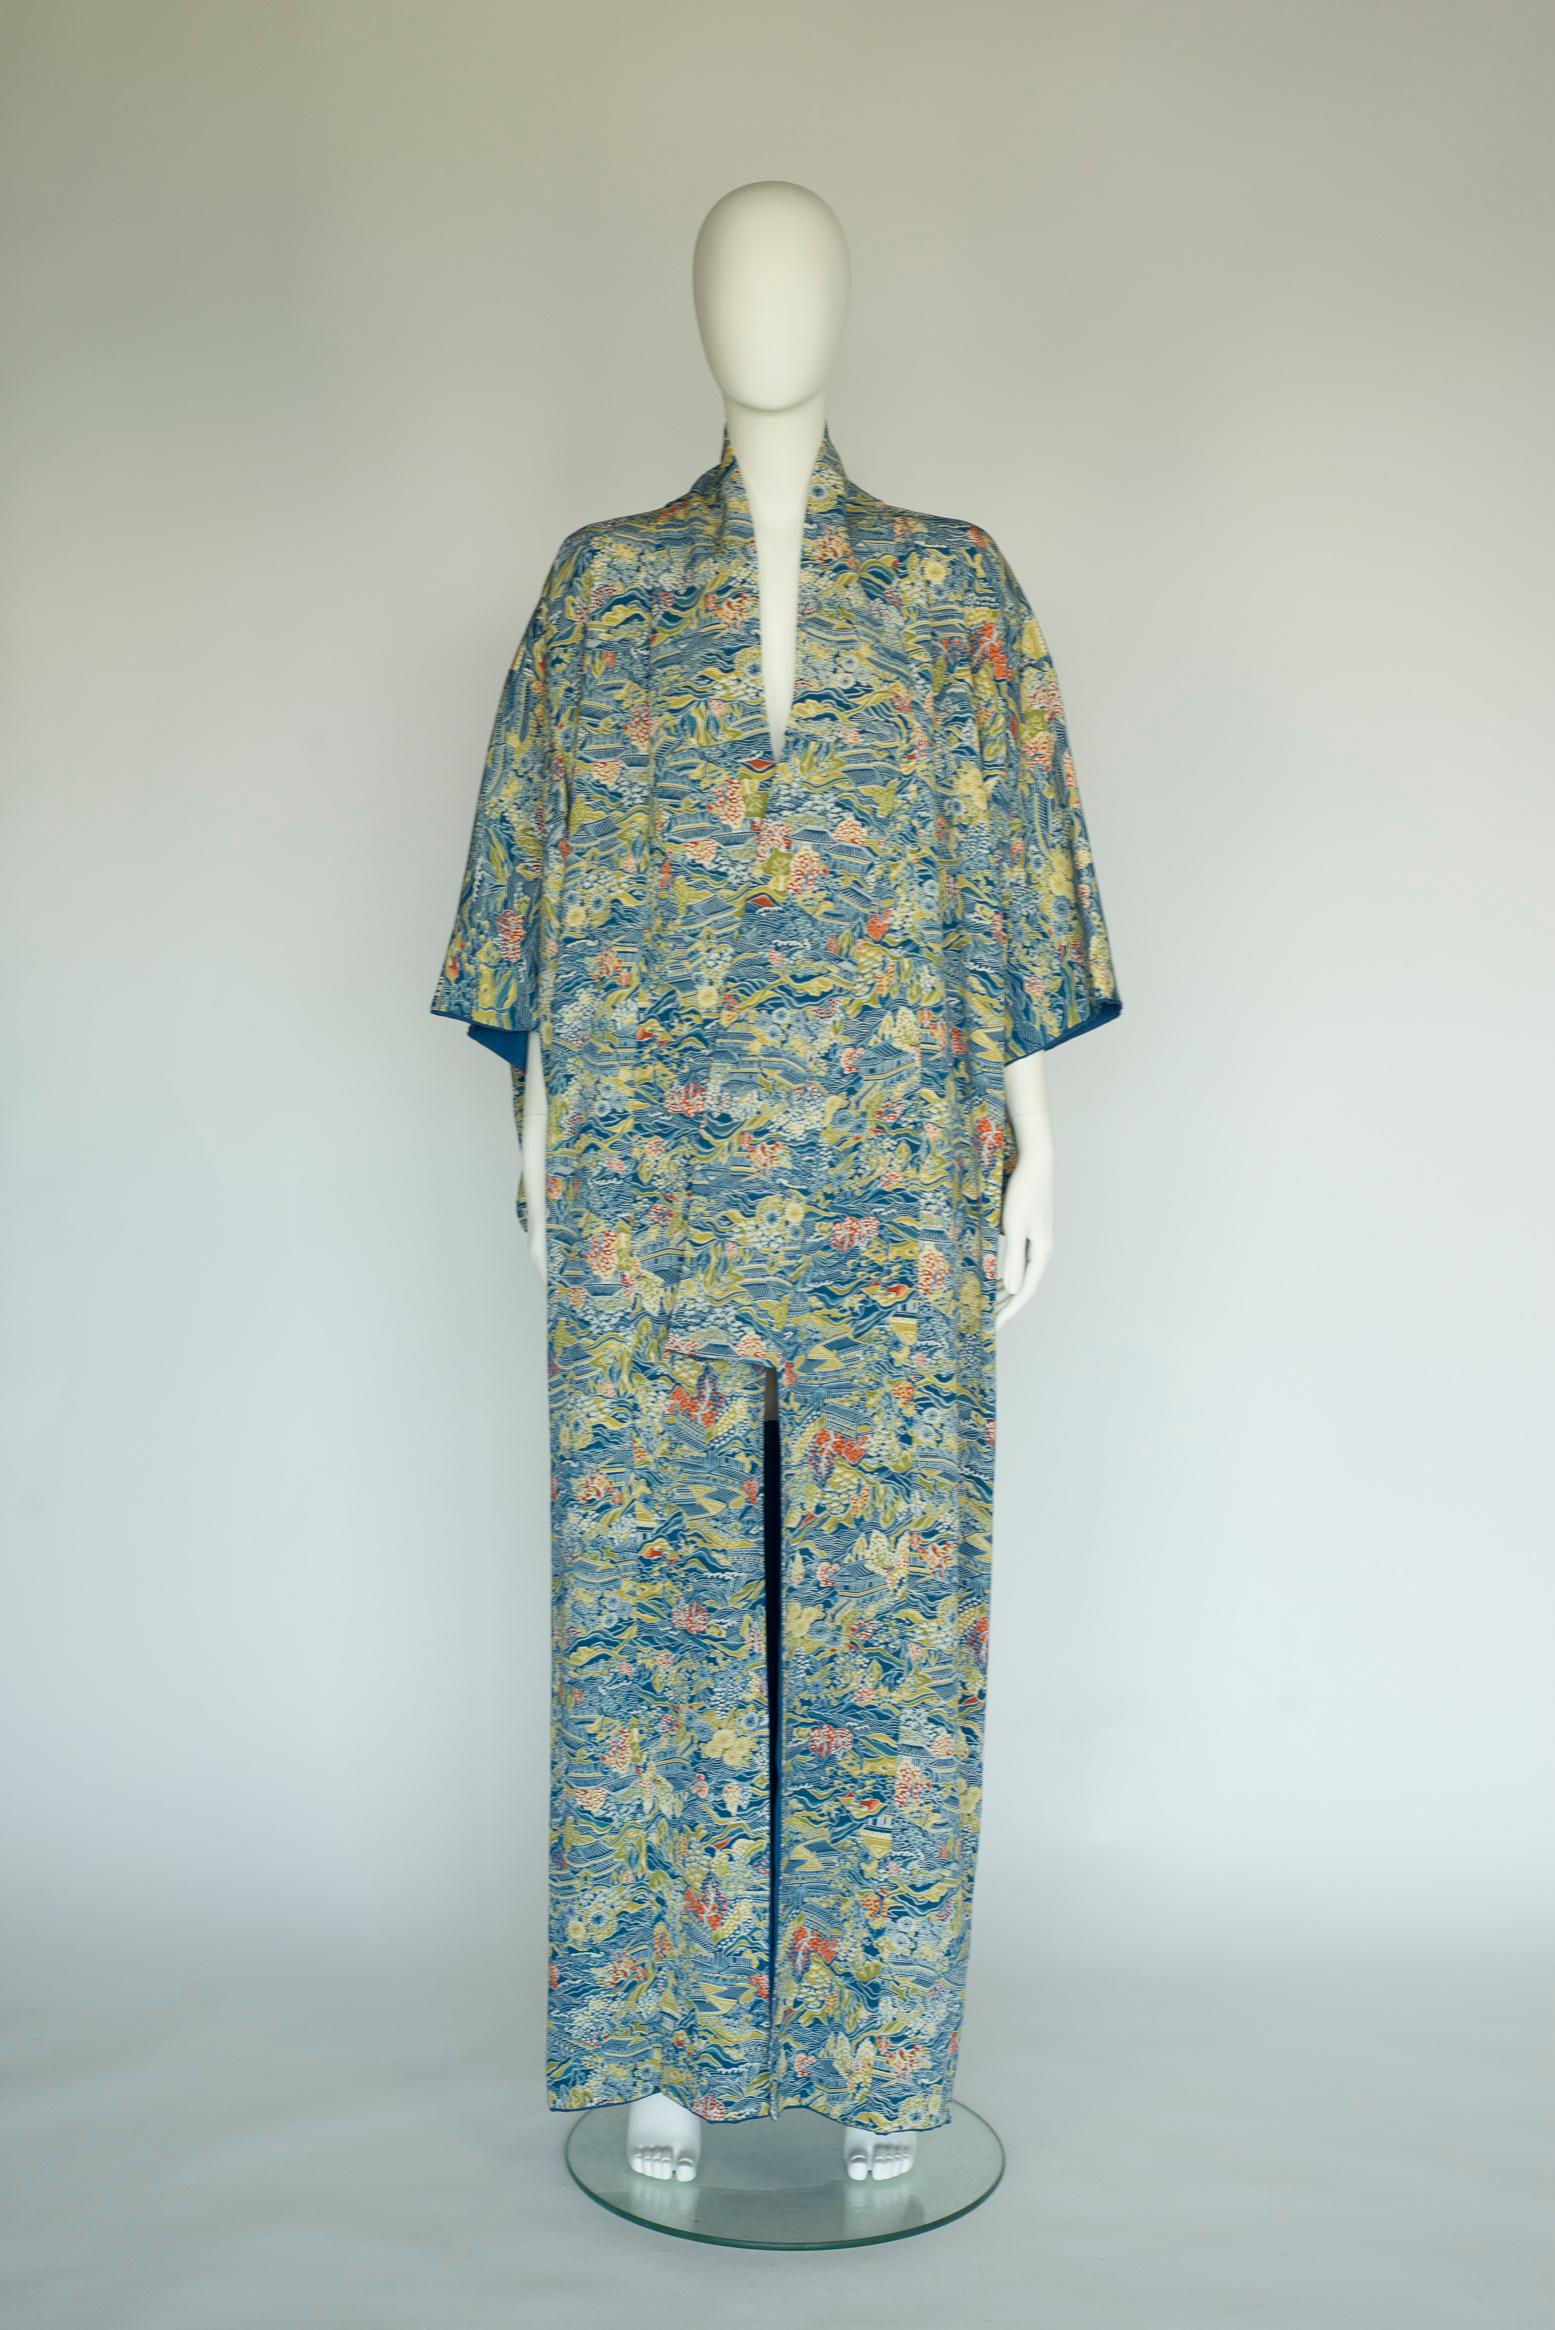 Fabelhafter Seidenkimono-Mantel in Museumsqualität aus den 30er Jahren.
